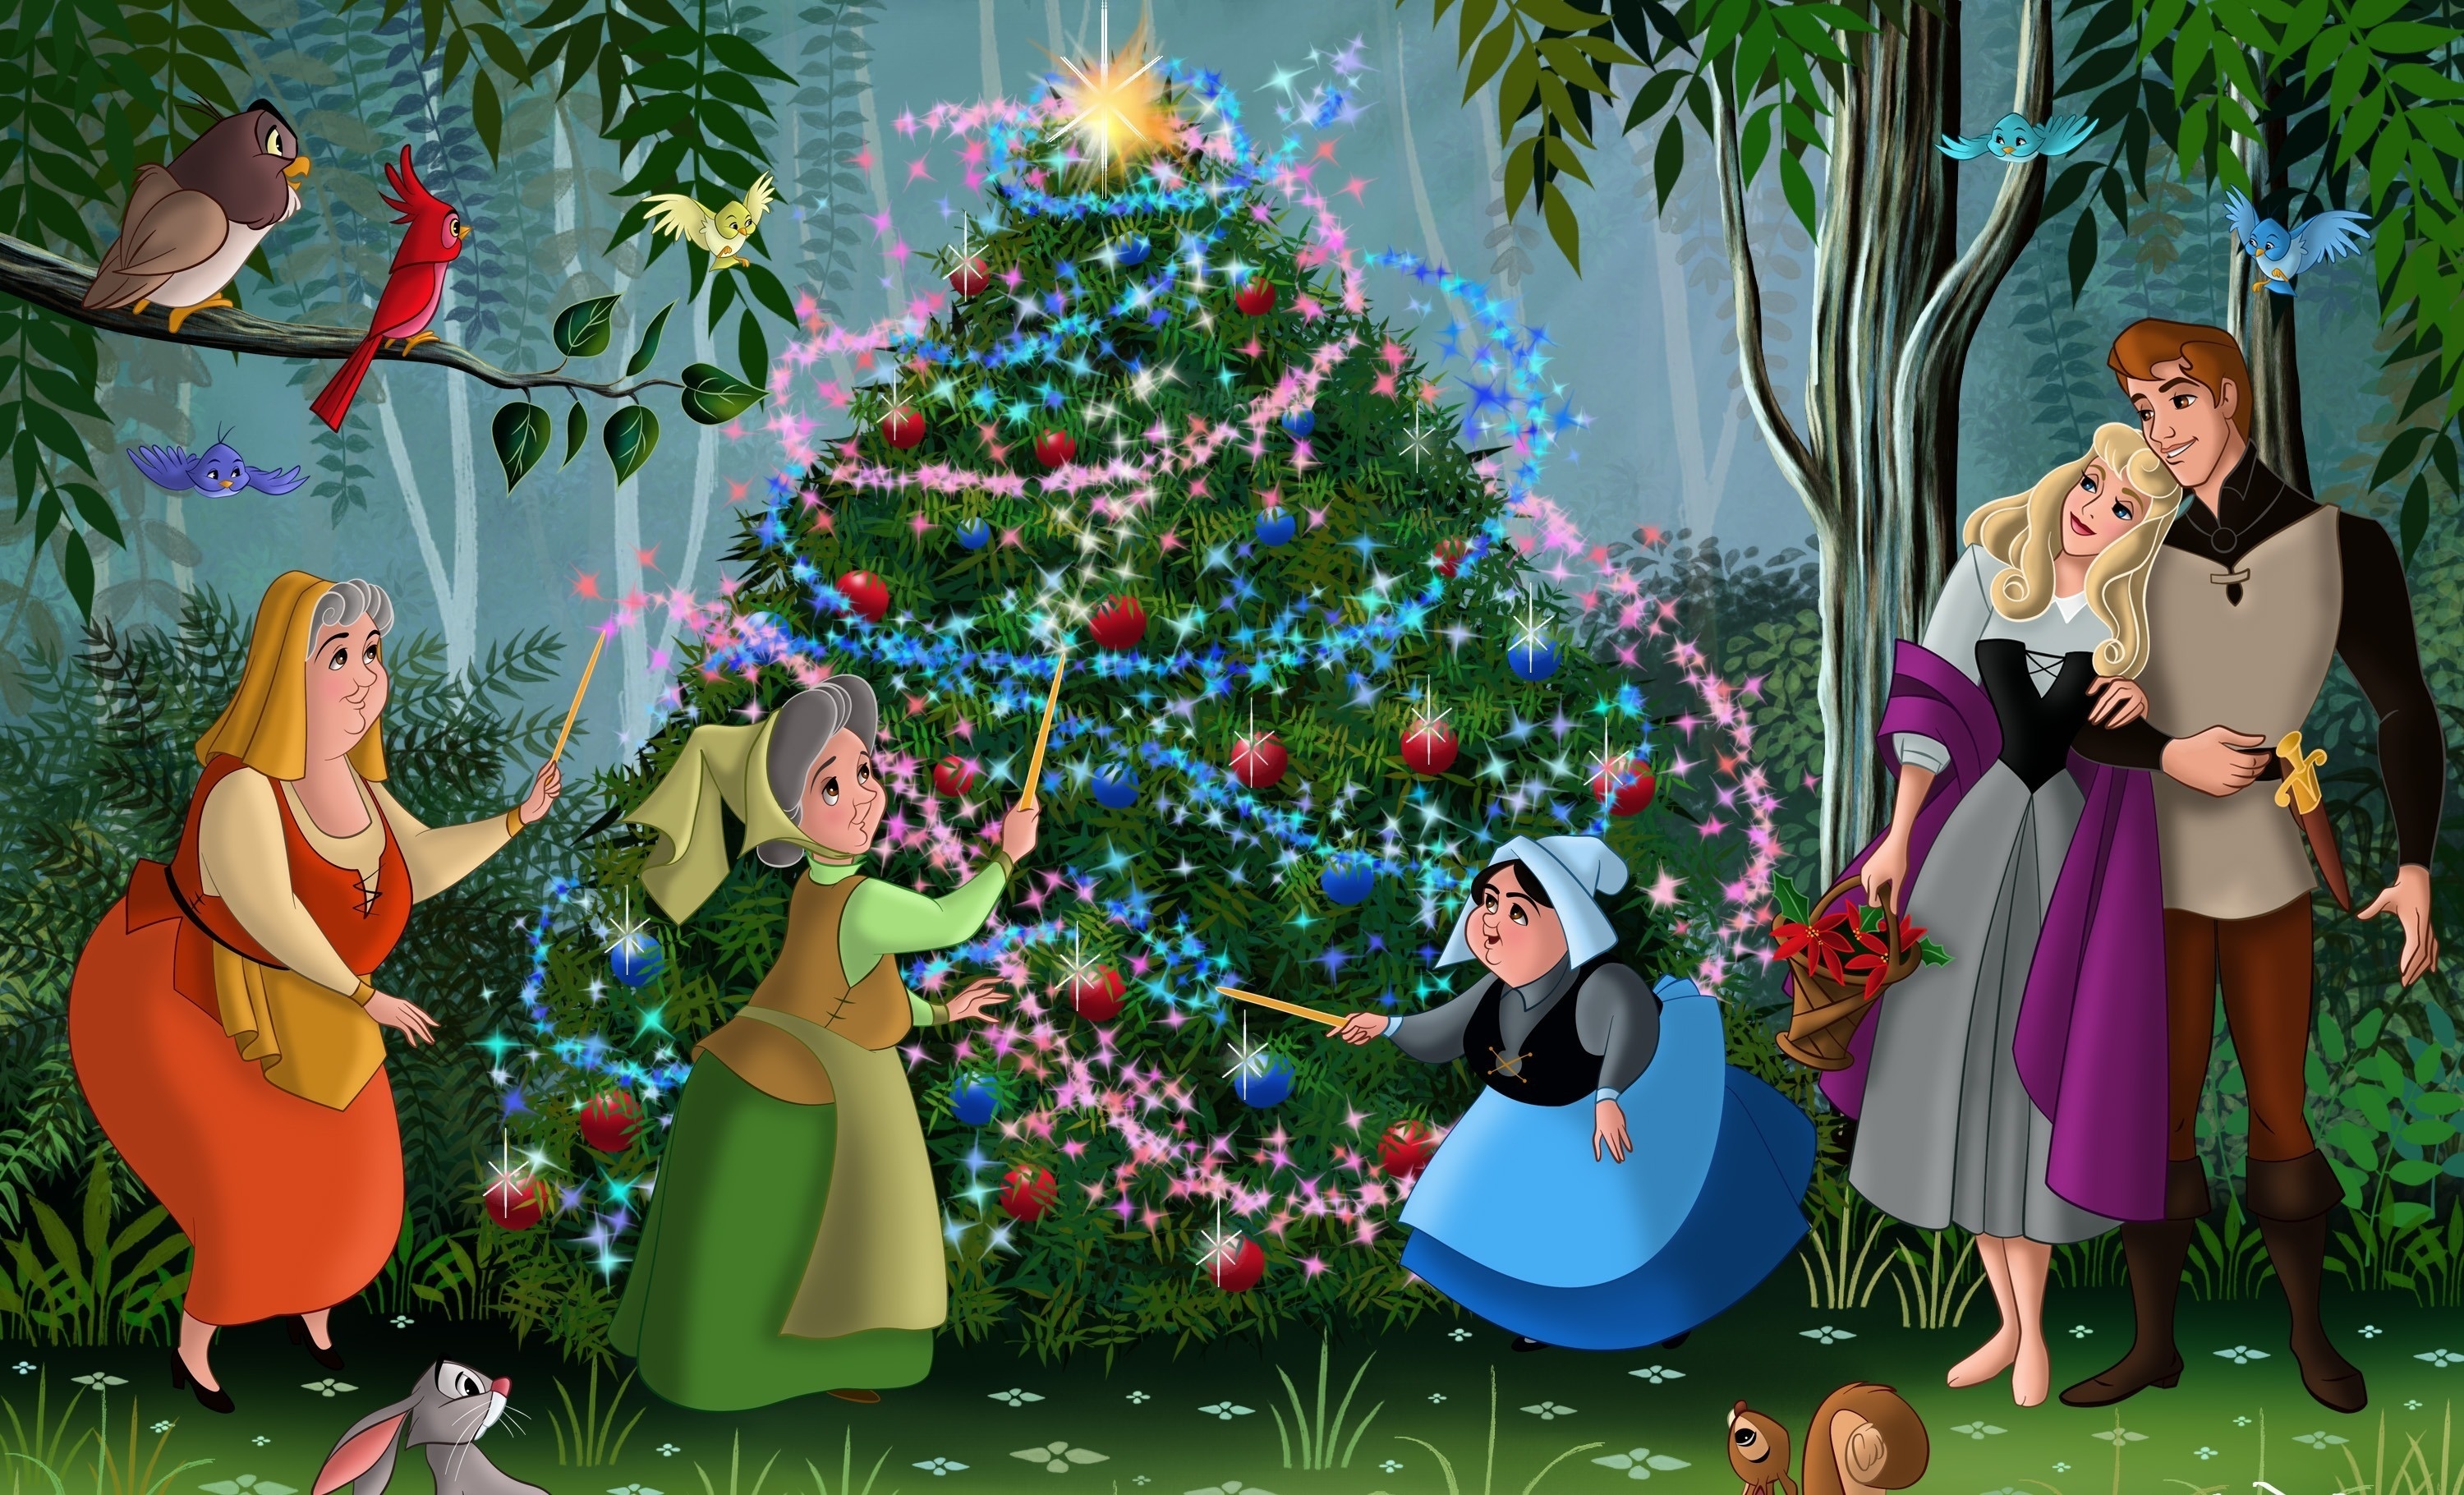 잠자는 숲속의 미녀 벽지,만화 영화,크리스마스 트리,크리스마스 이브,크리스마스 장식,나무